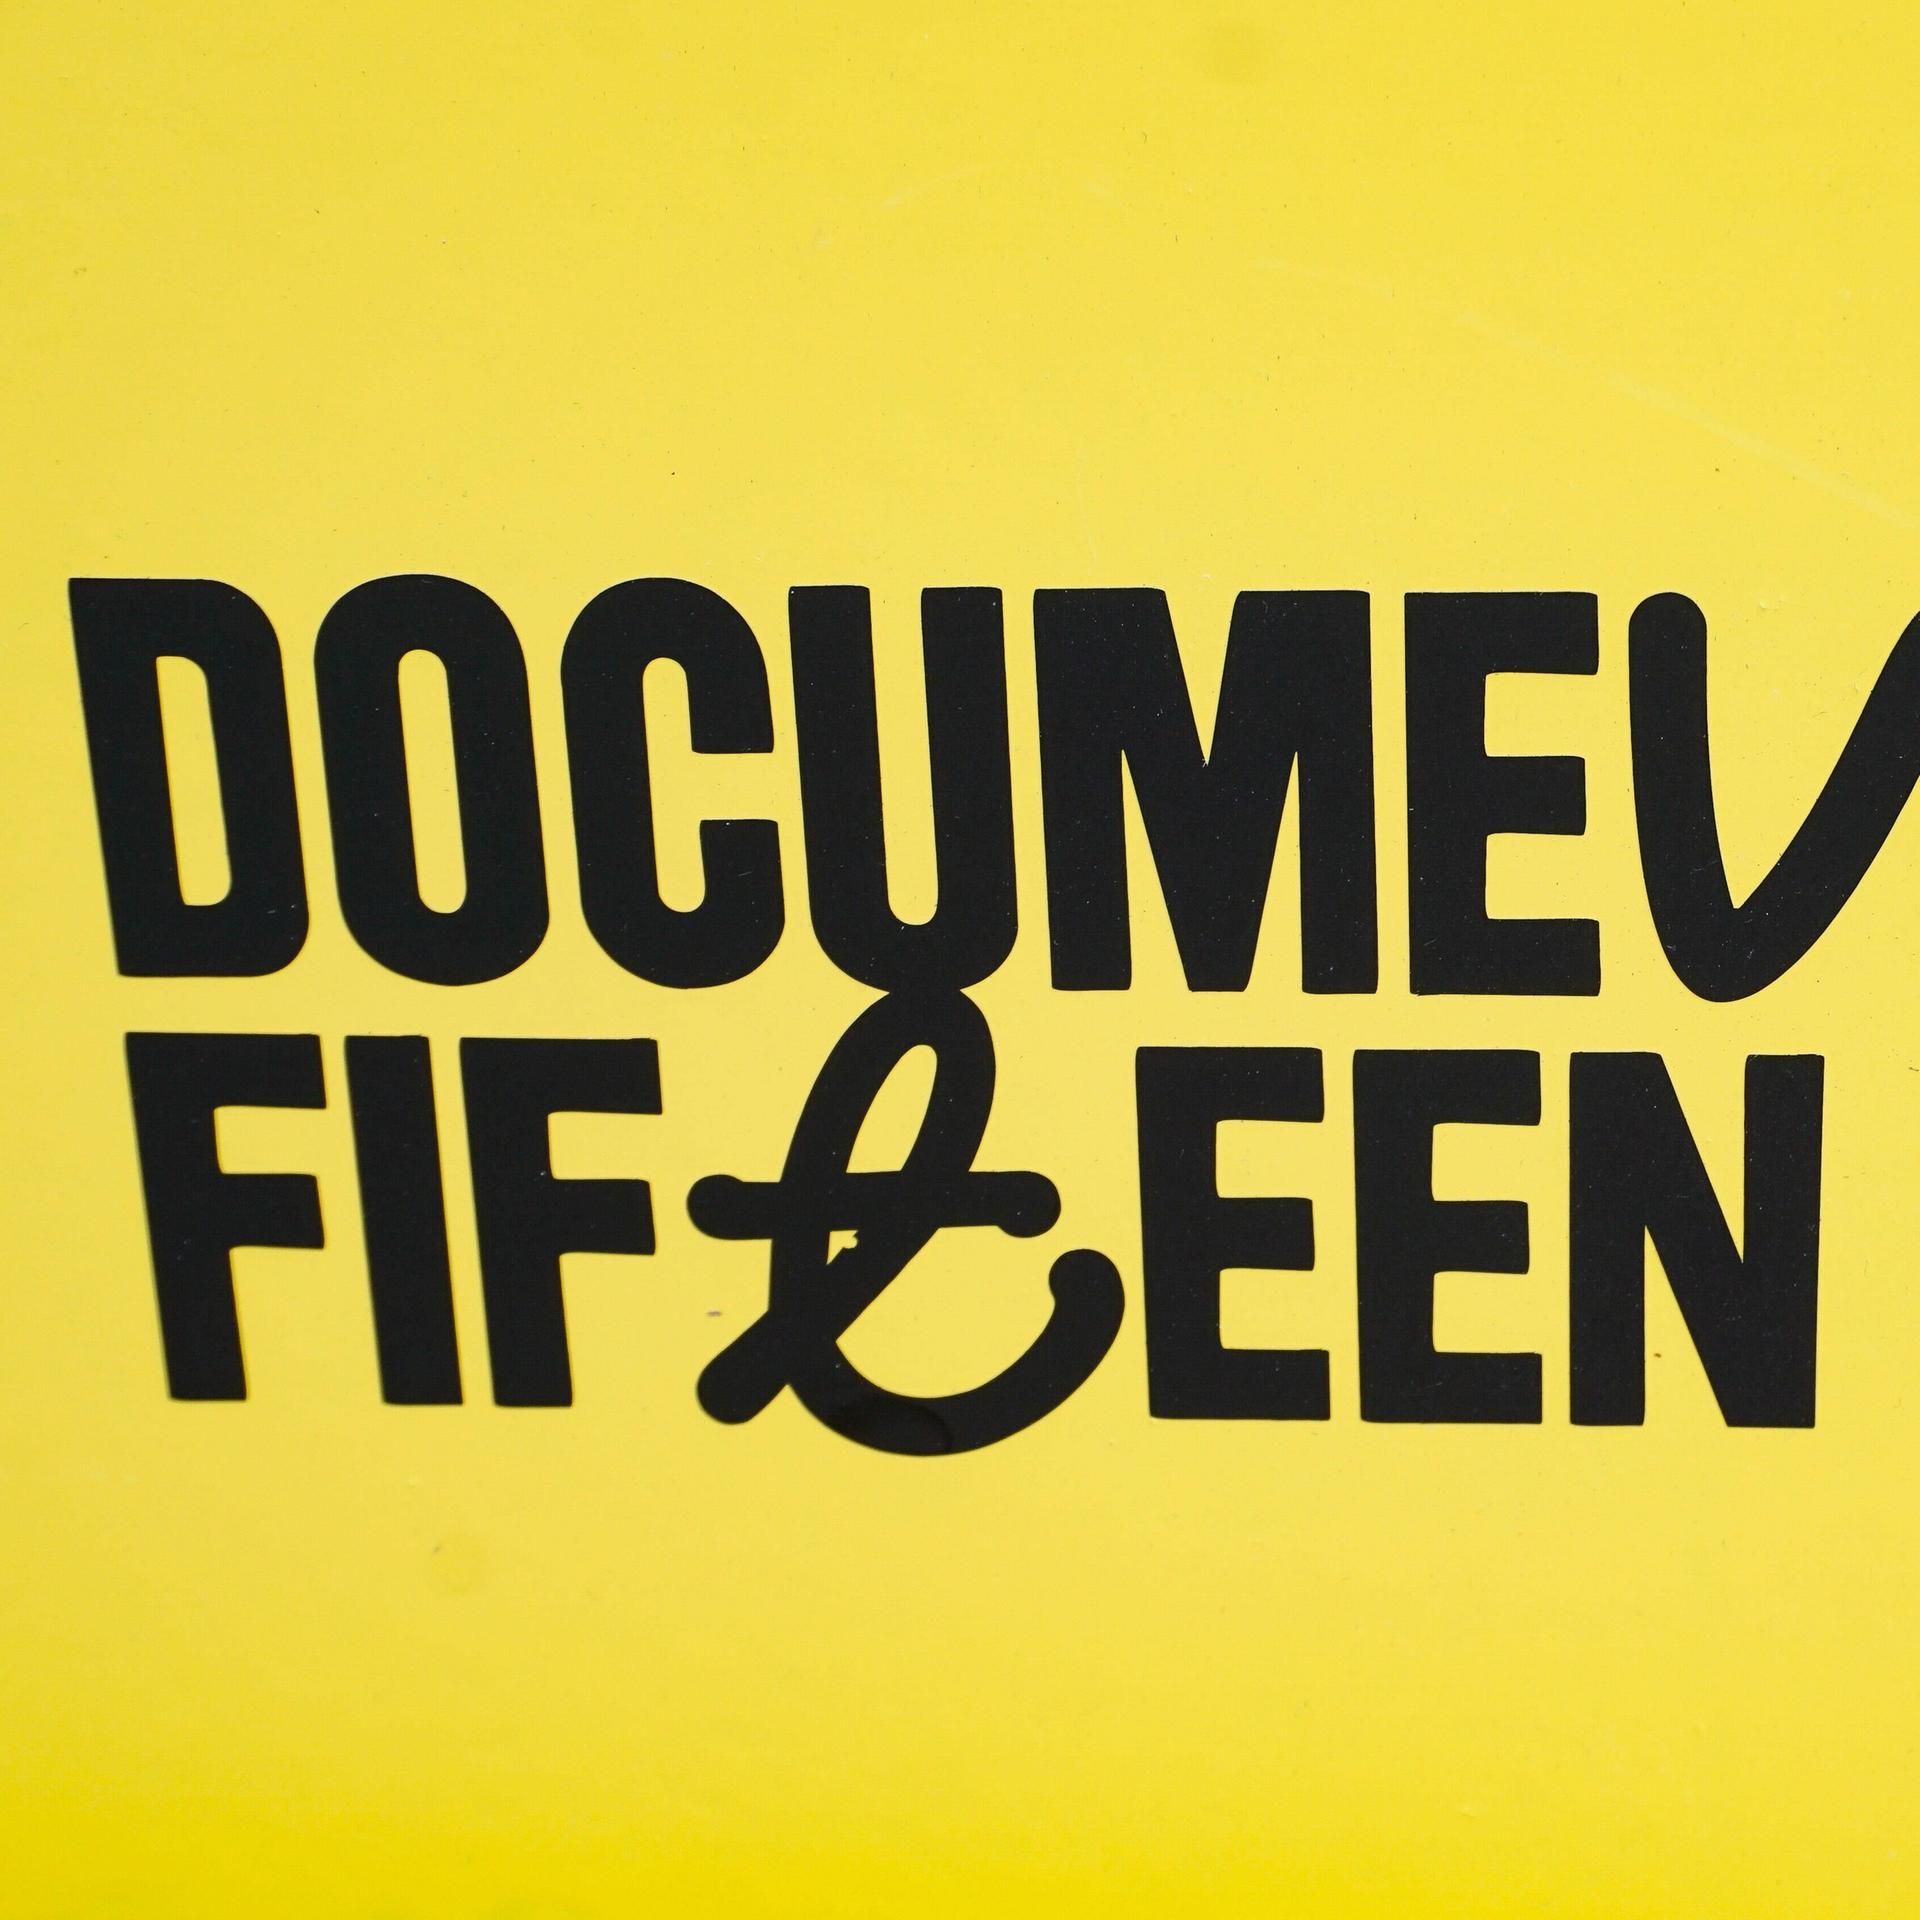 Ein gelbes Plakat mit der Aufschrift "Documenta Fifteen"